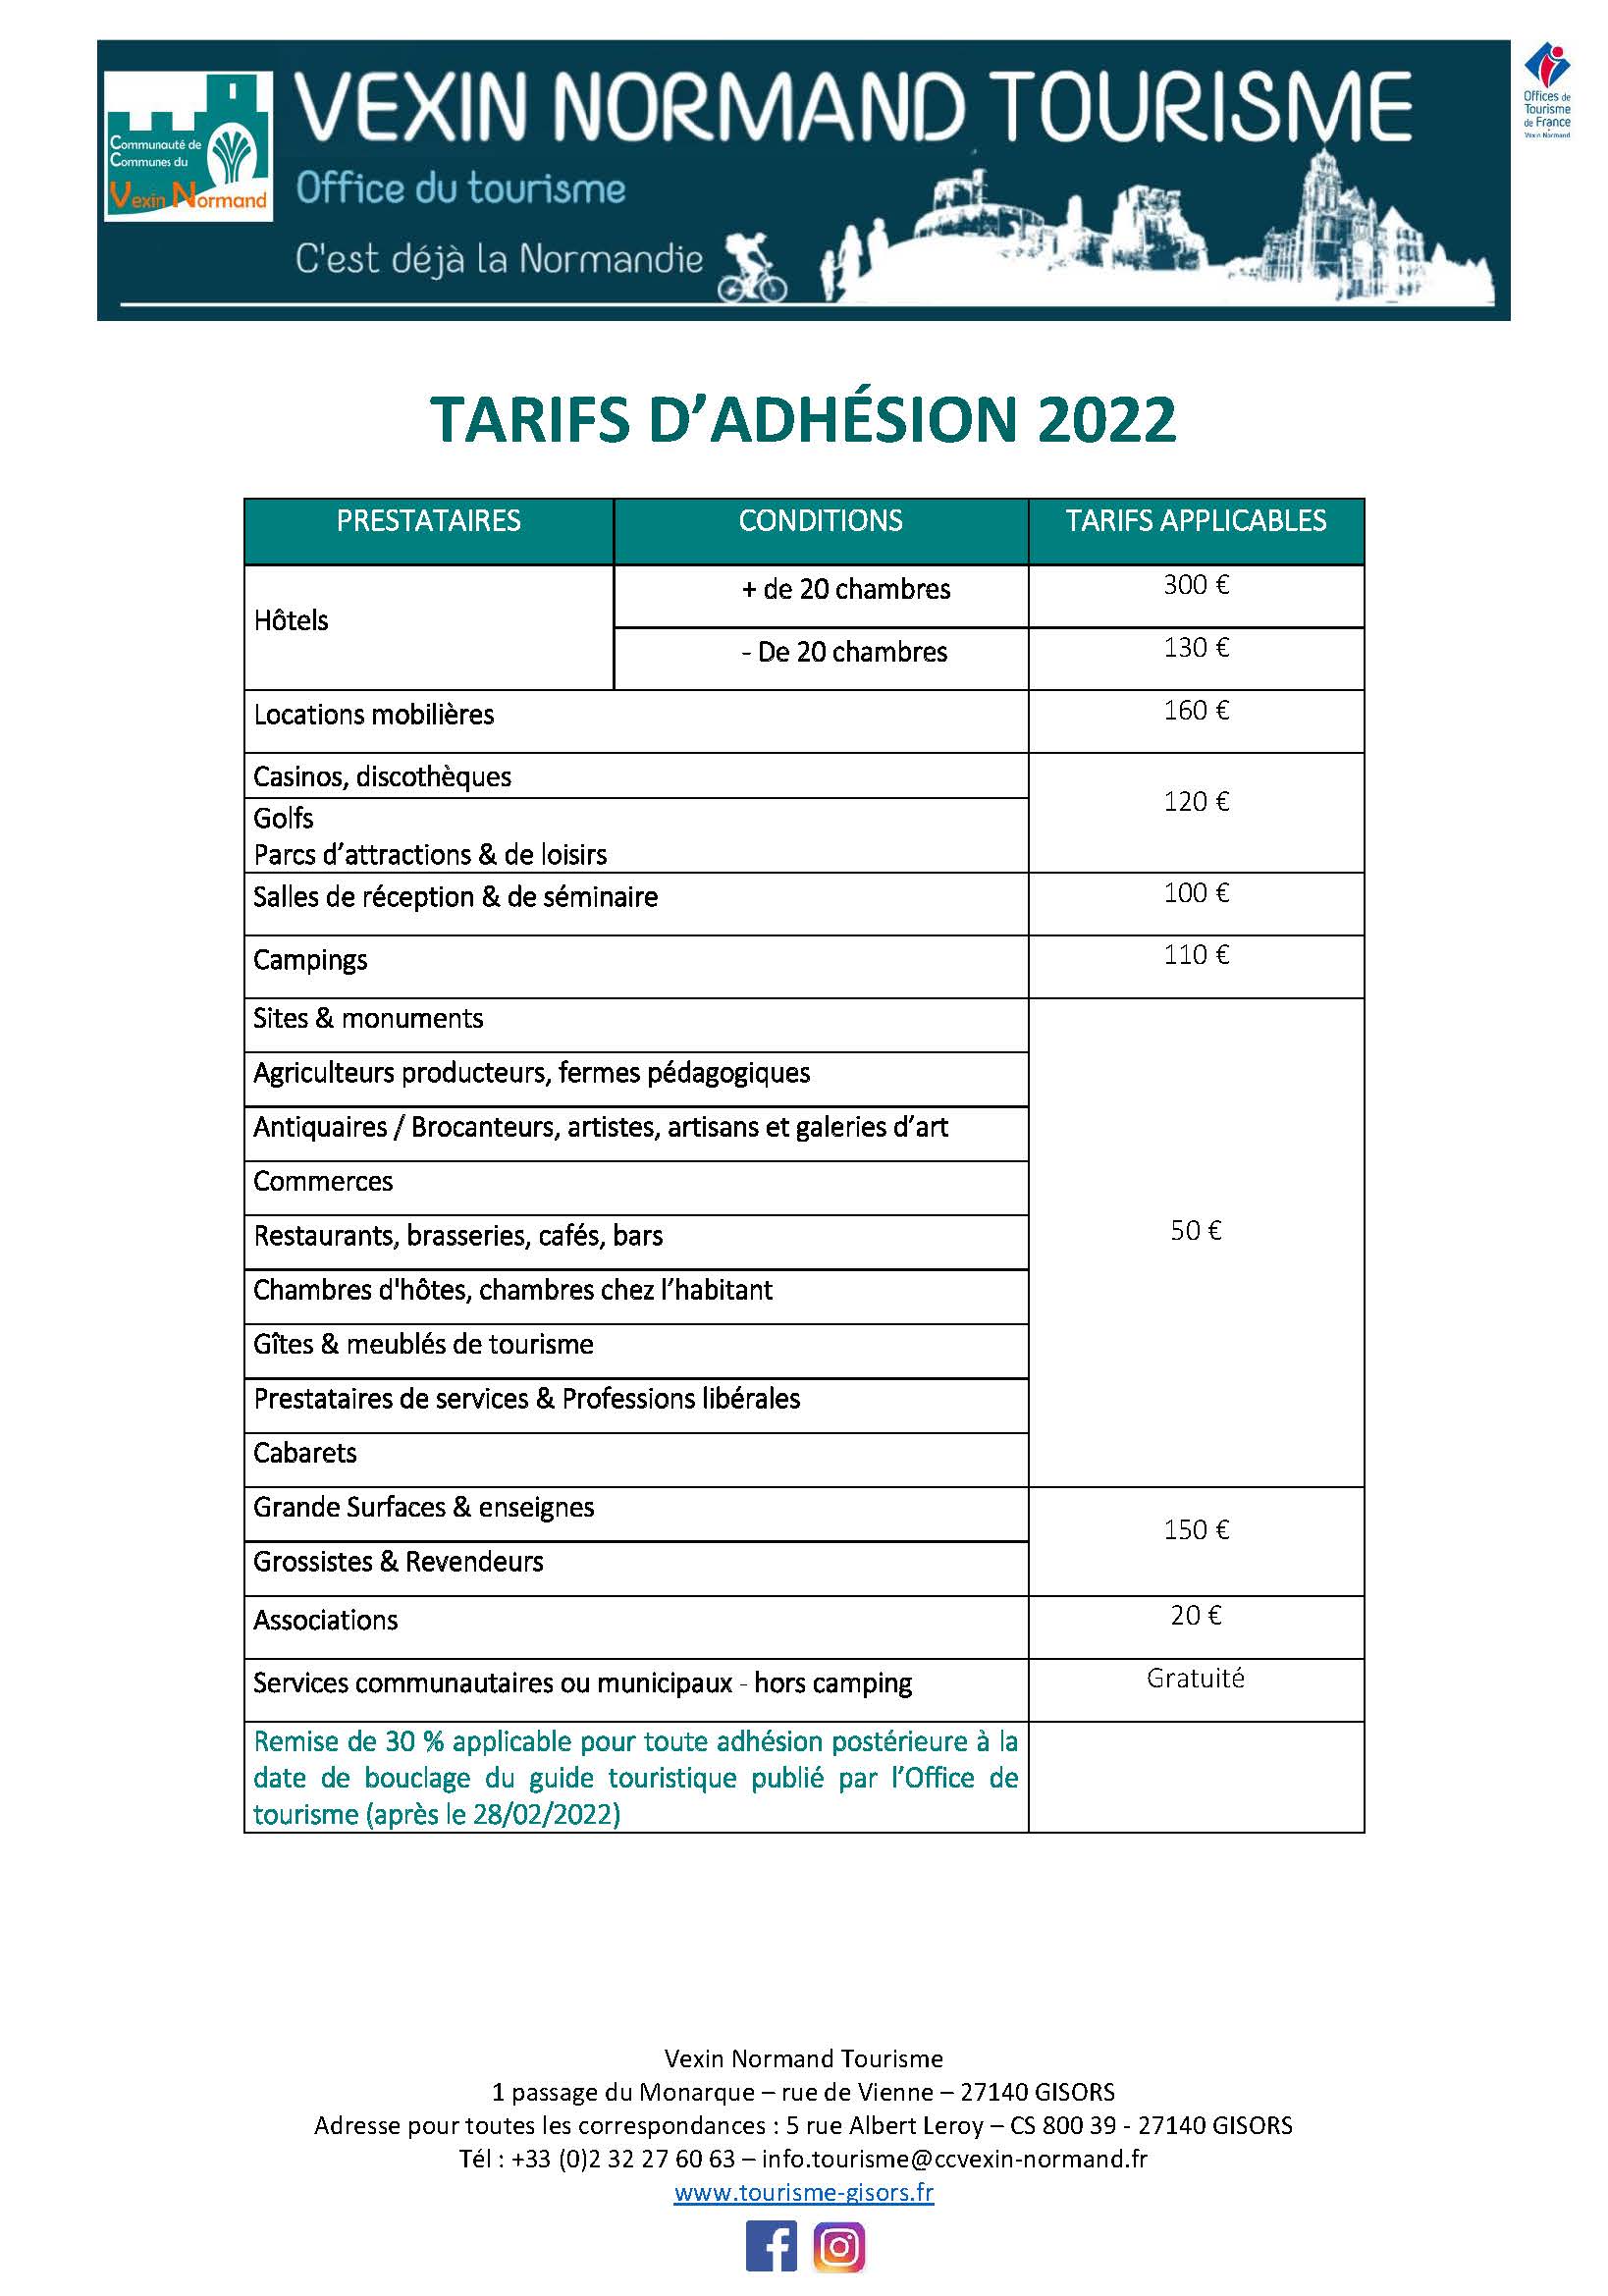 Tarifs adhésion 2022 Vexin Normand Tourisme